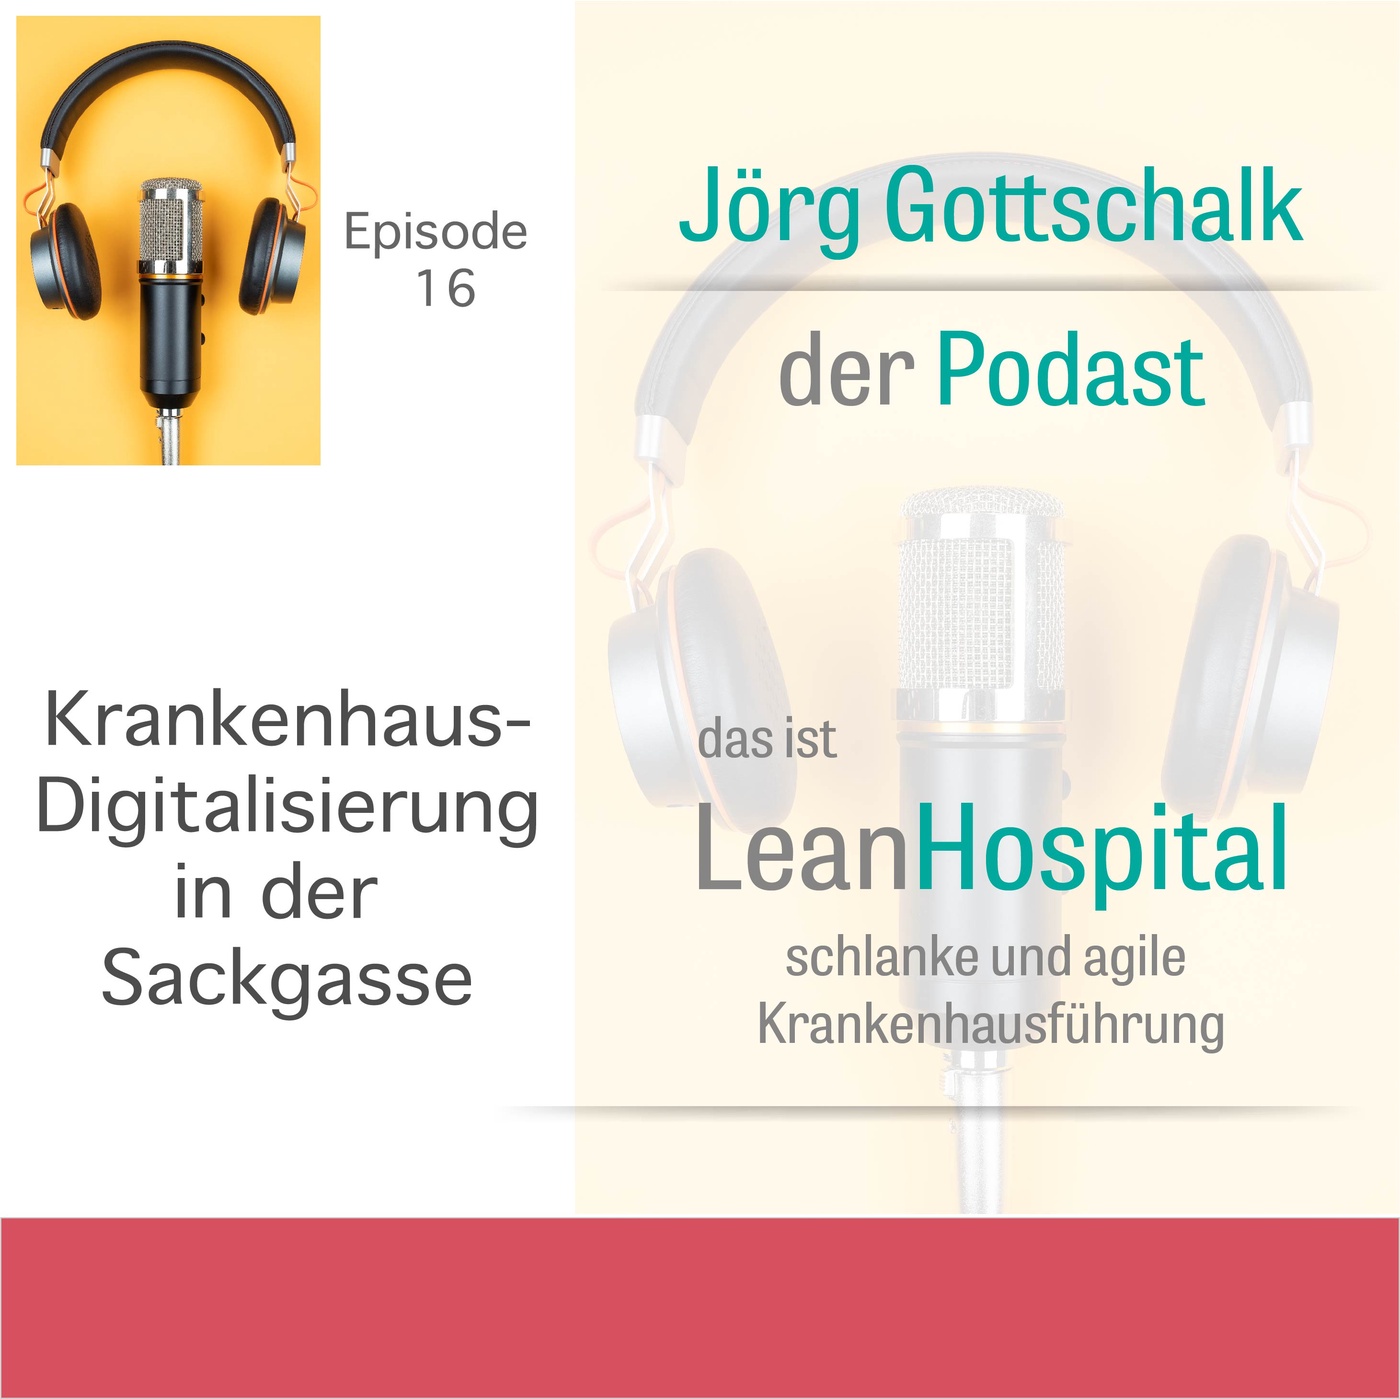 Episode 16: Krankenhaus-Digitalisierung in der Sackgasse